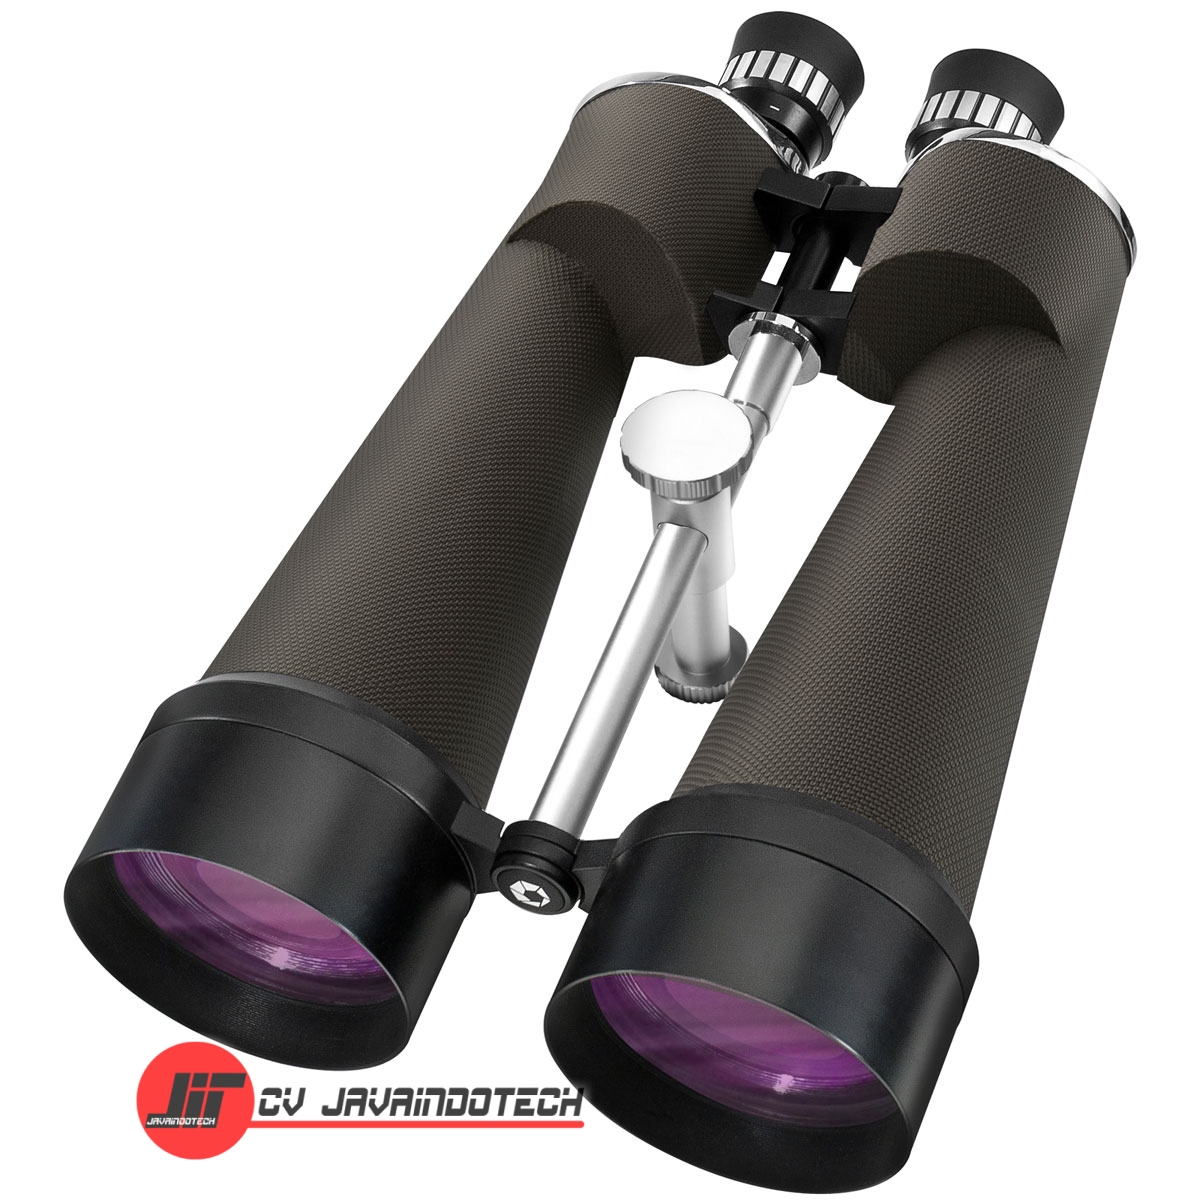 Review Spesifikasi dan Harga Jual Barska 25x100 WP Cosmos Binoculars original termurah dan bergaransi resmi